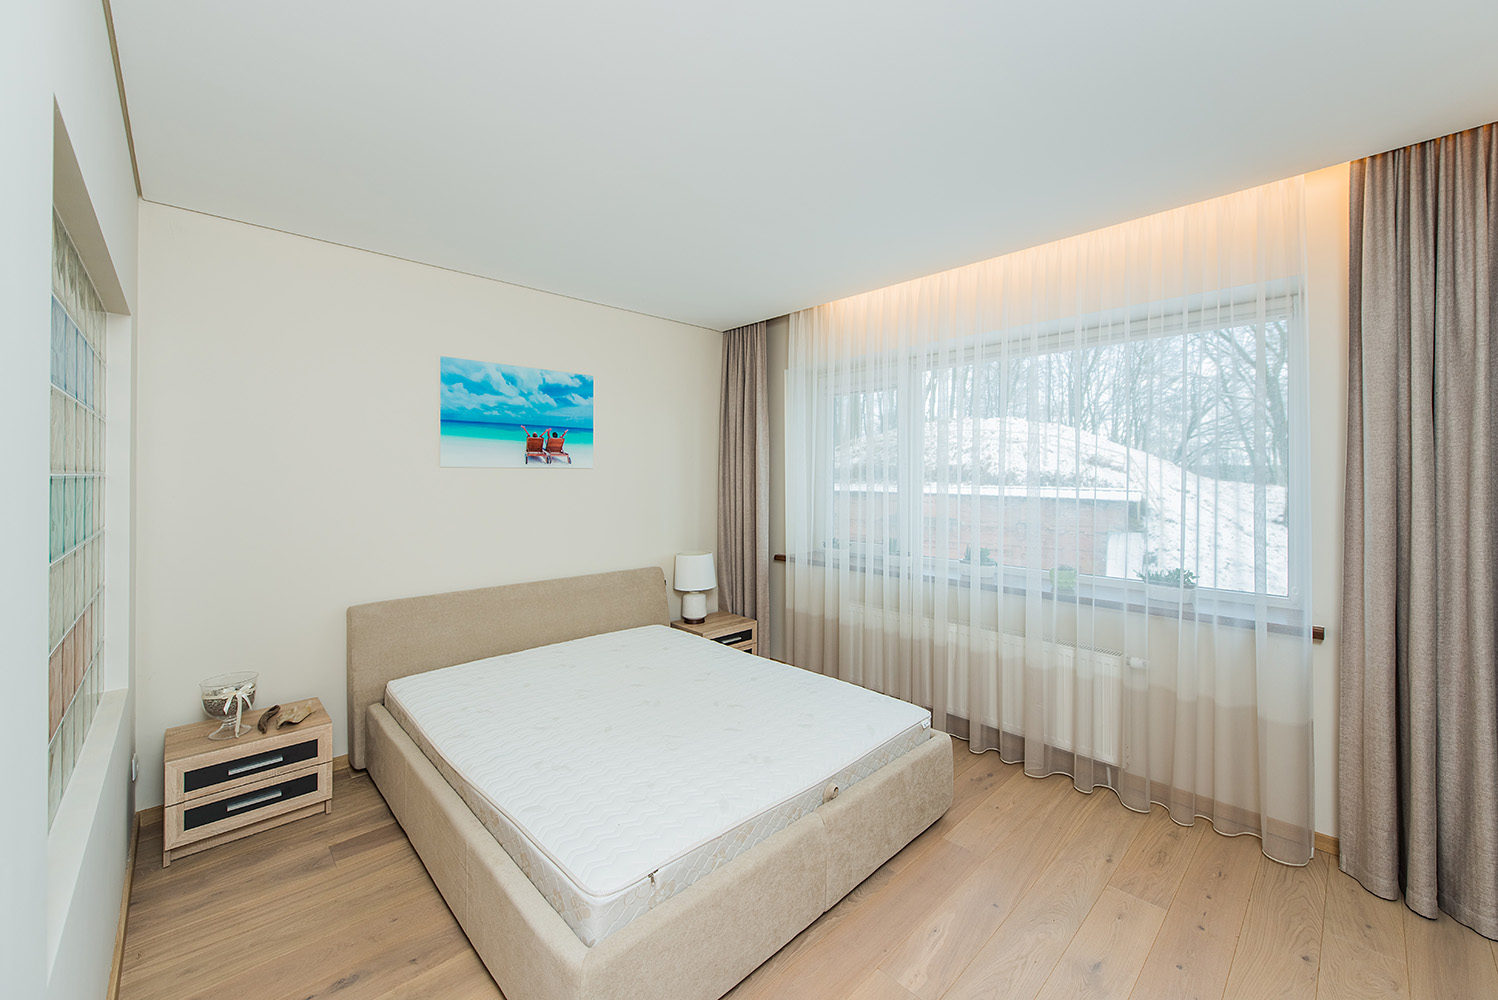 Parduodamas erdvus dviejų kambarių butas prestižinėje vietoje Vičiūnuose.